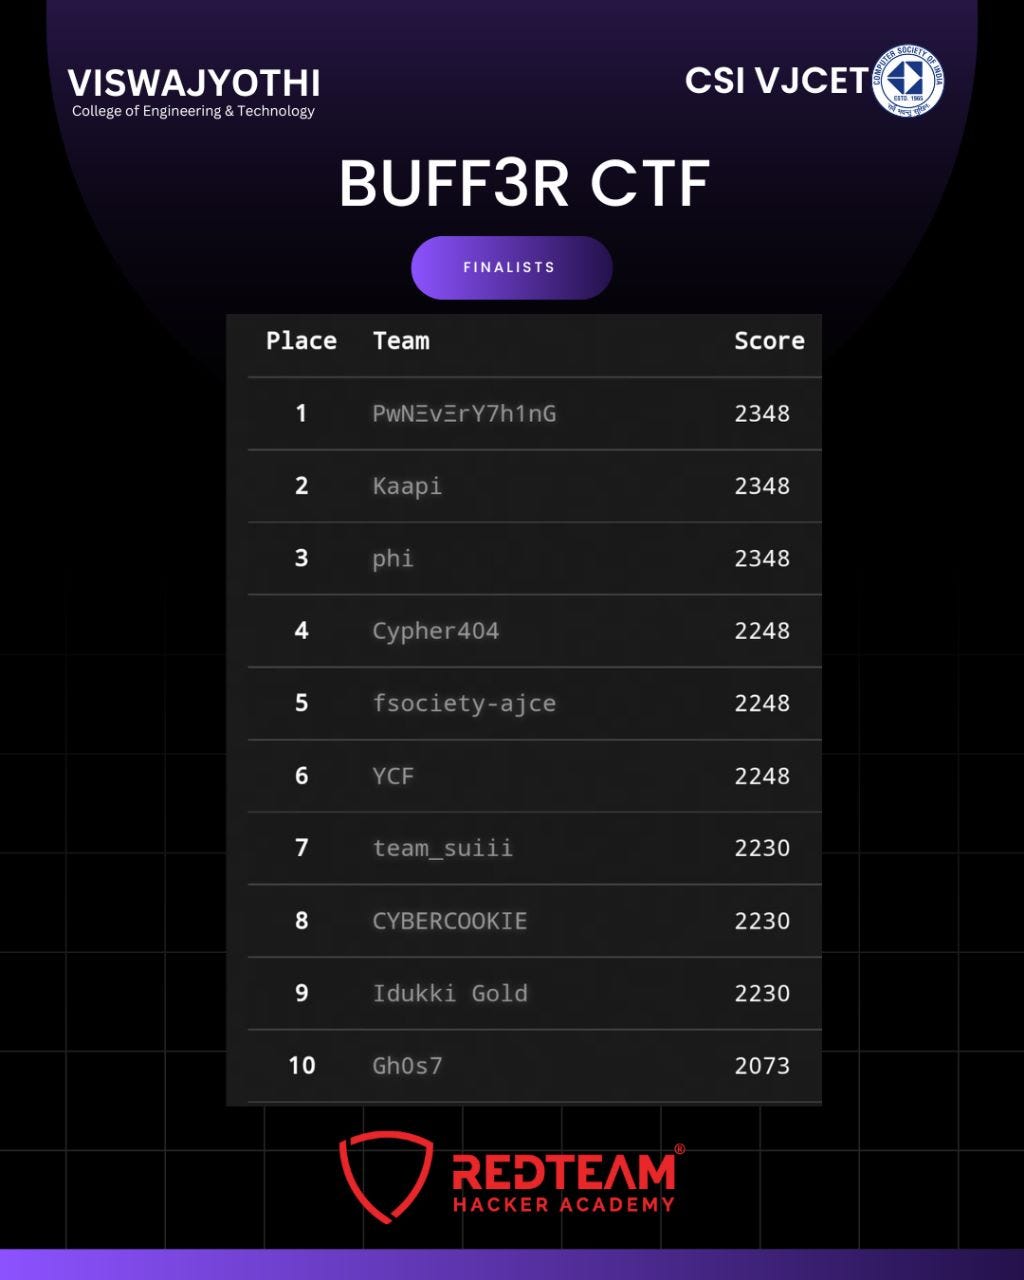 Top 10 in BUFF3R CTF